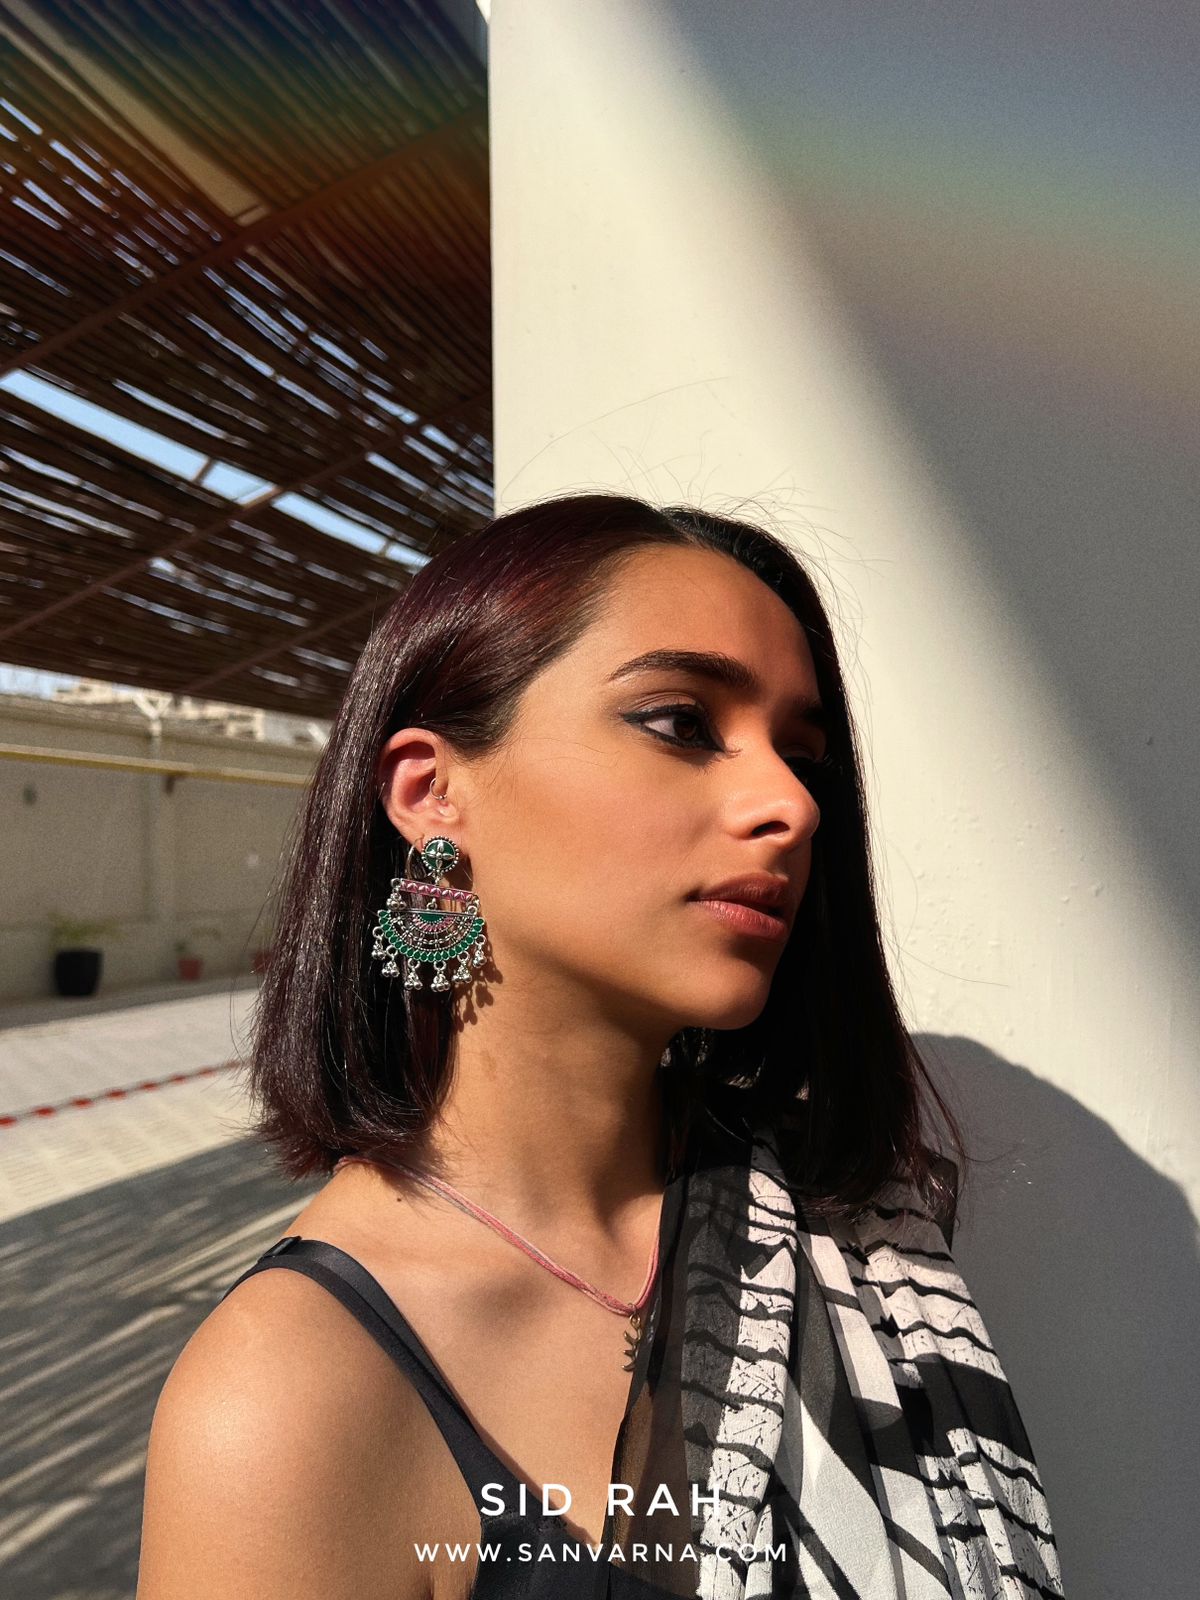 Sidrah Earrings